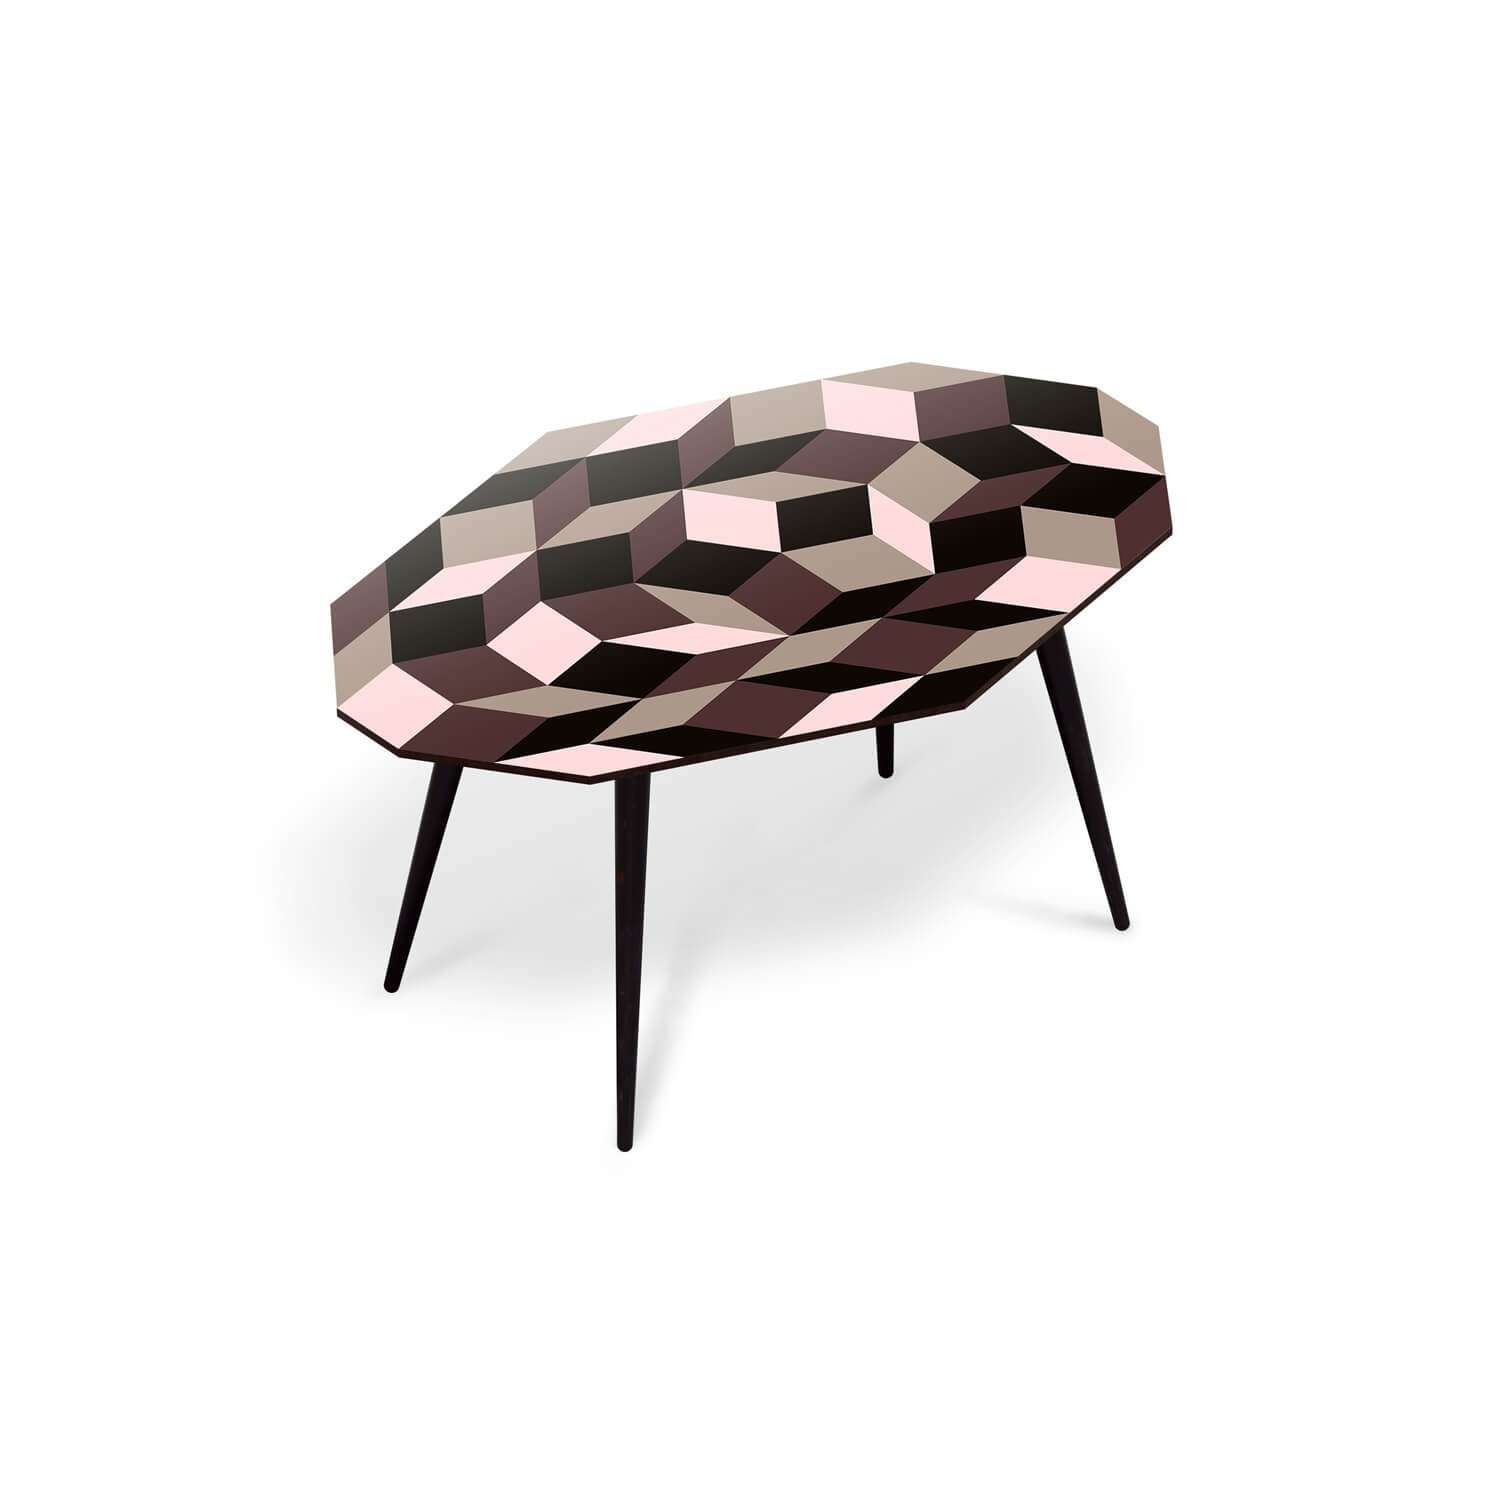 Table basse pour salon, motif Penrose Ice Cream, géométrique et couleur creme glacée, design IchetKar, édition bazartherapy